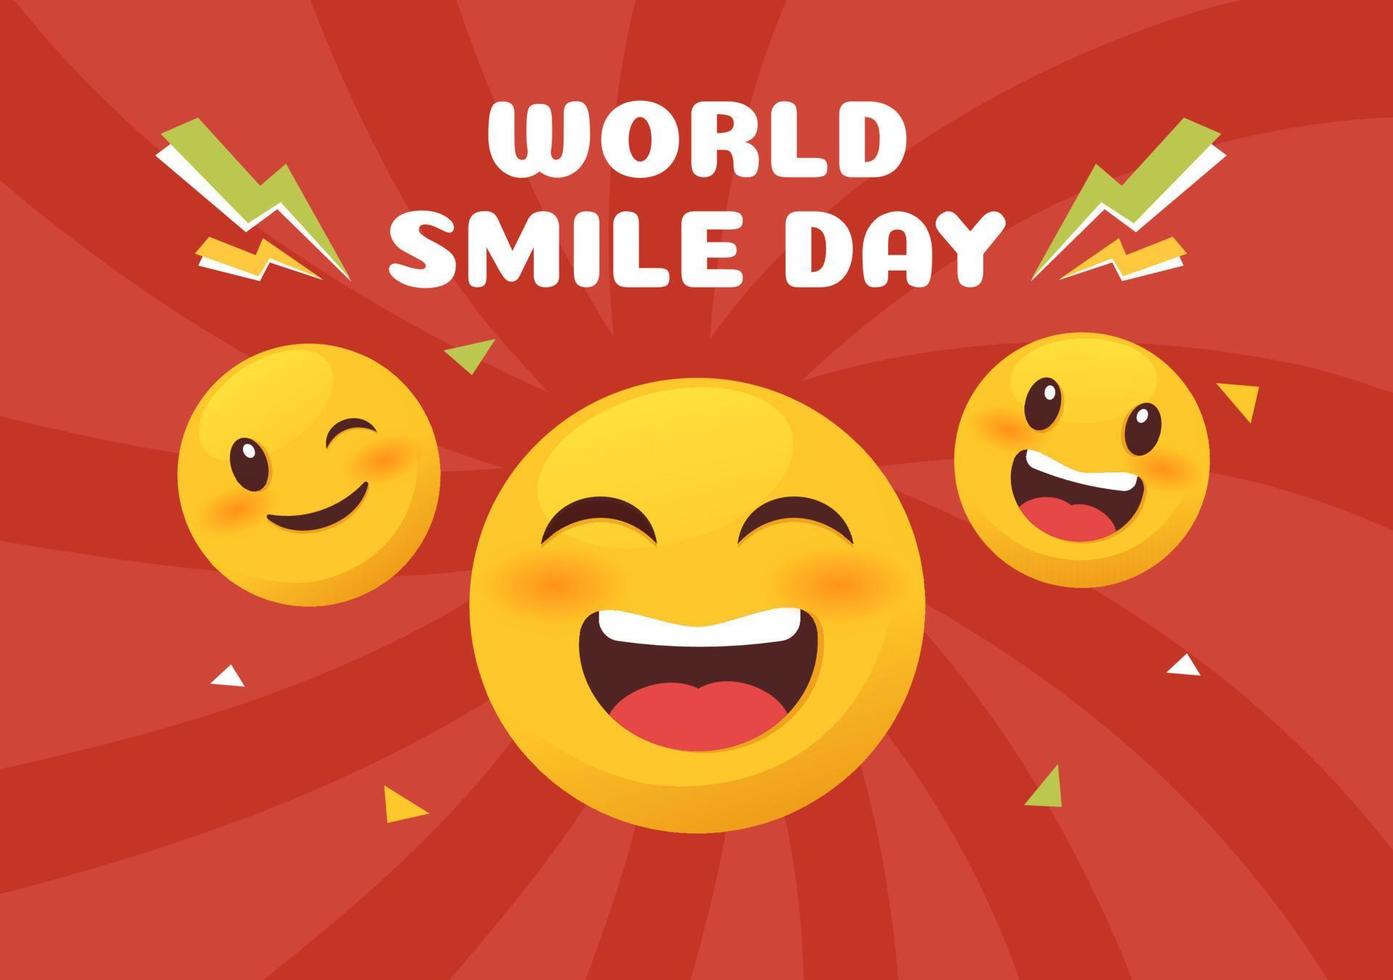 wereld glimlach dag hand getekende cartoon afbeelding met lachende uitdrukking en geluk gezicht in vlakke stijl achtergrond vector